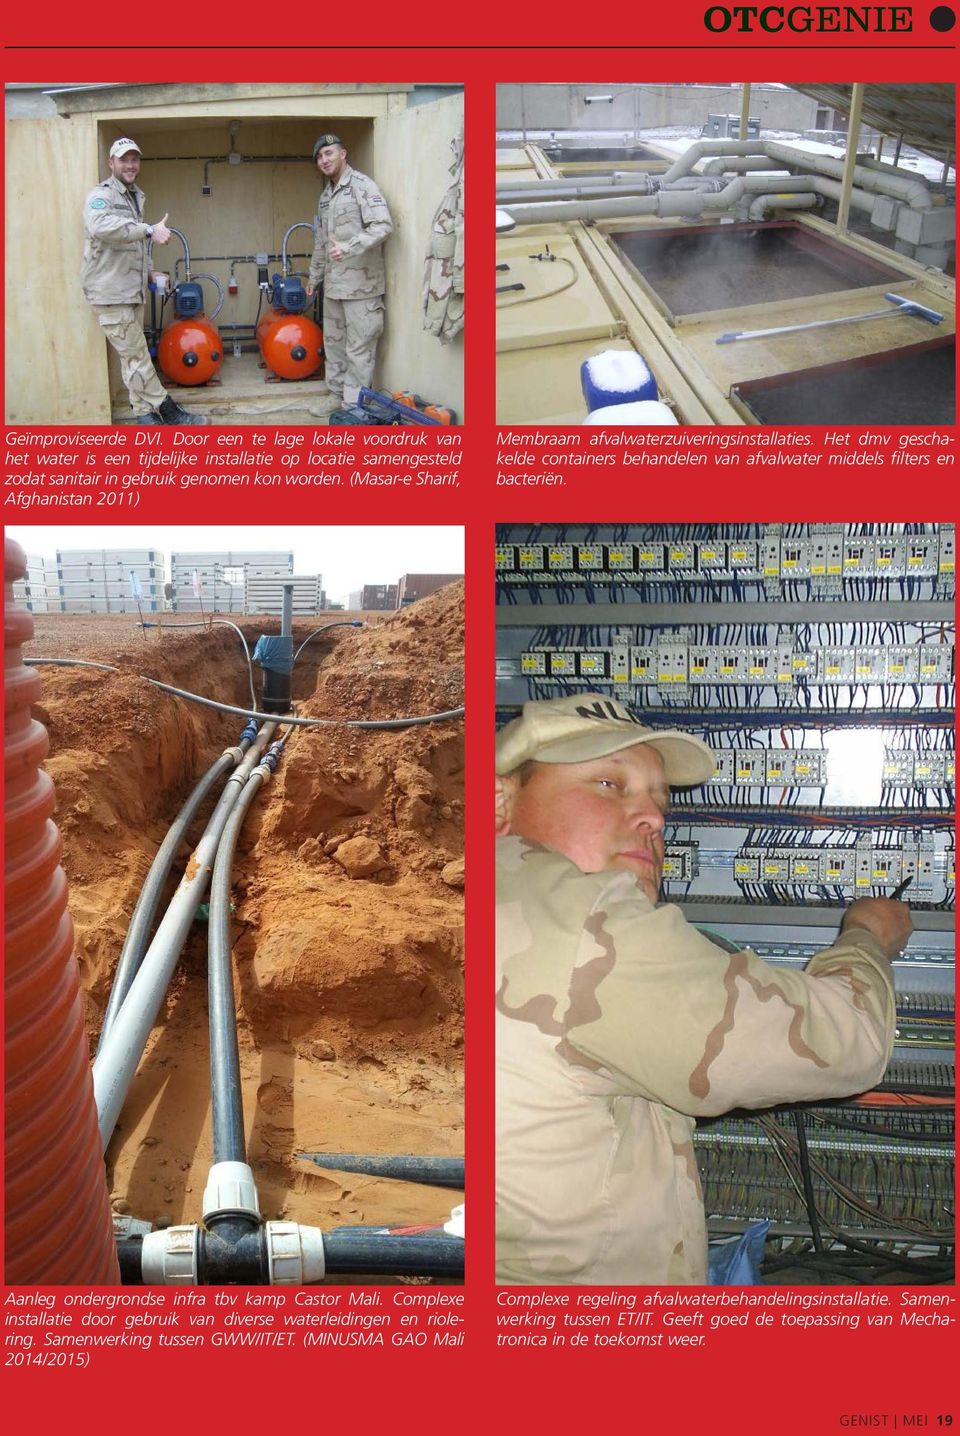 (Masar-e Sharif, Afghanistan 2011) Membraam afvalwaterzuiveringsinstallaties. Het dmv geschakelde containers behandelen van afvalwater middels filters en bacteriën.